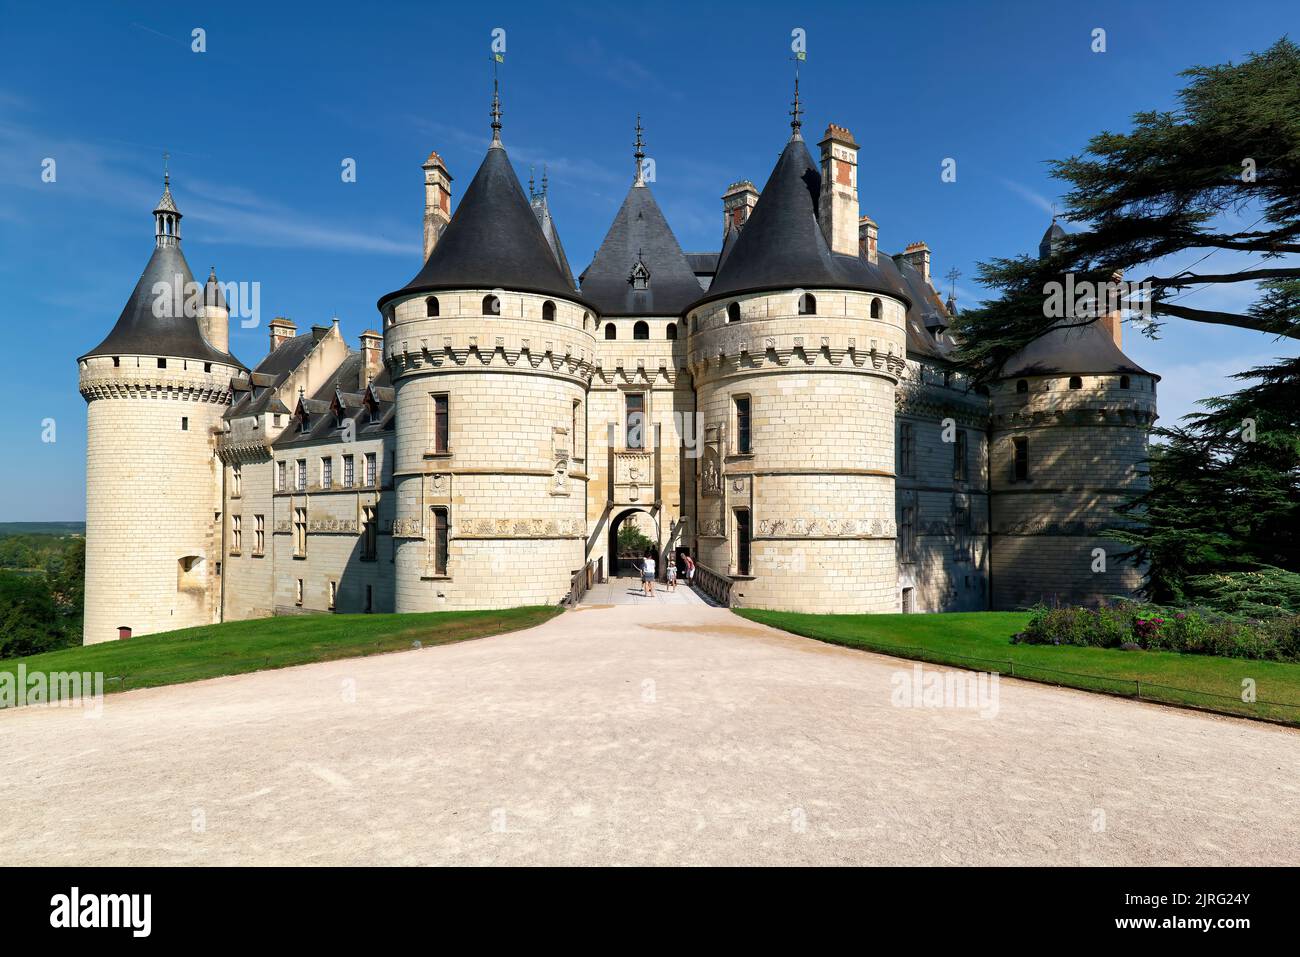 Chaumont Francia. Castillo de Chaumont sur Loire Foto de stock